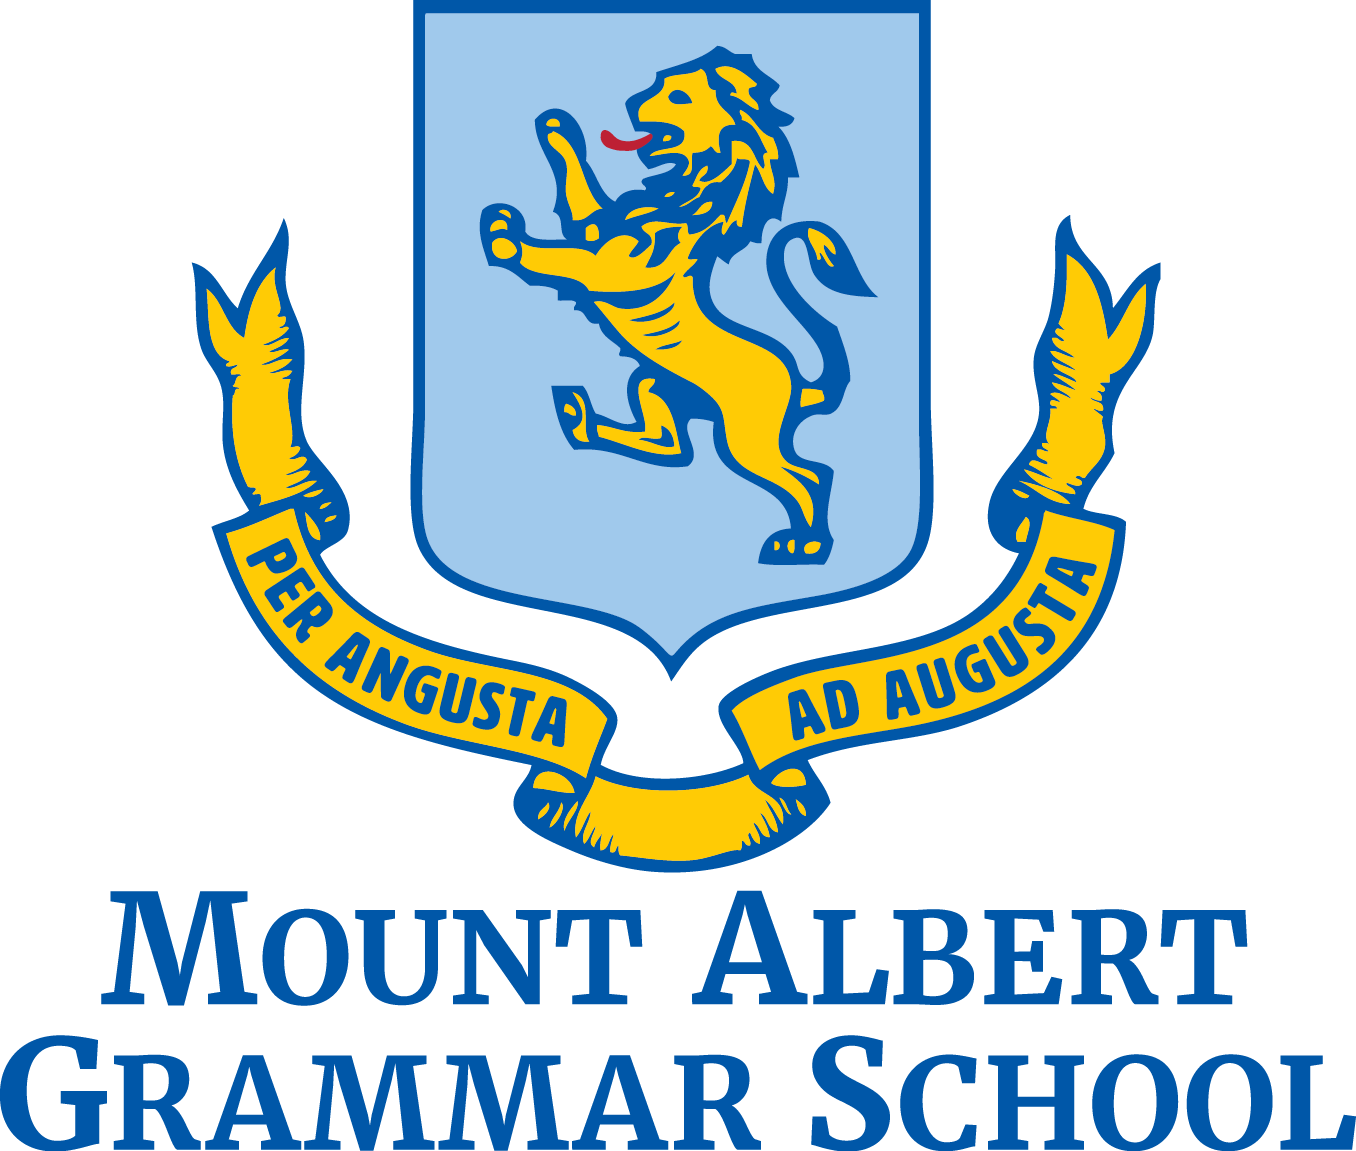 Mount Albert Grammar School logo